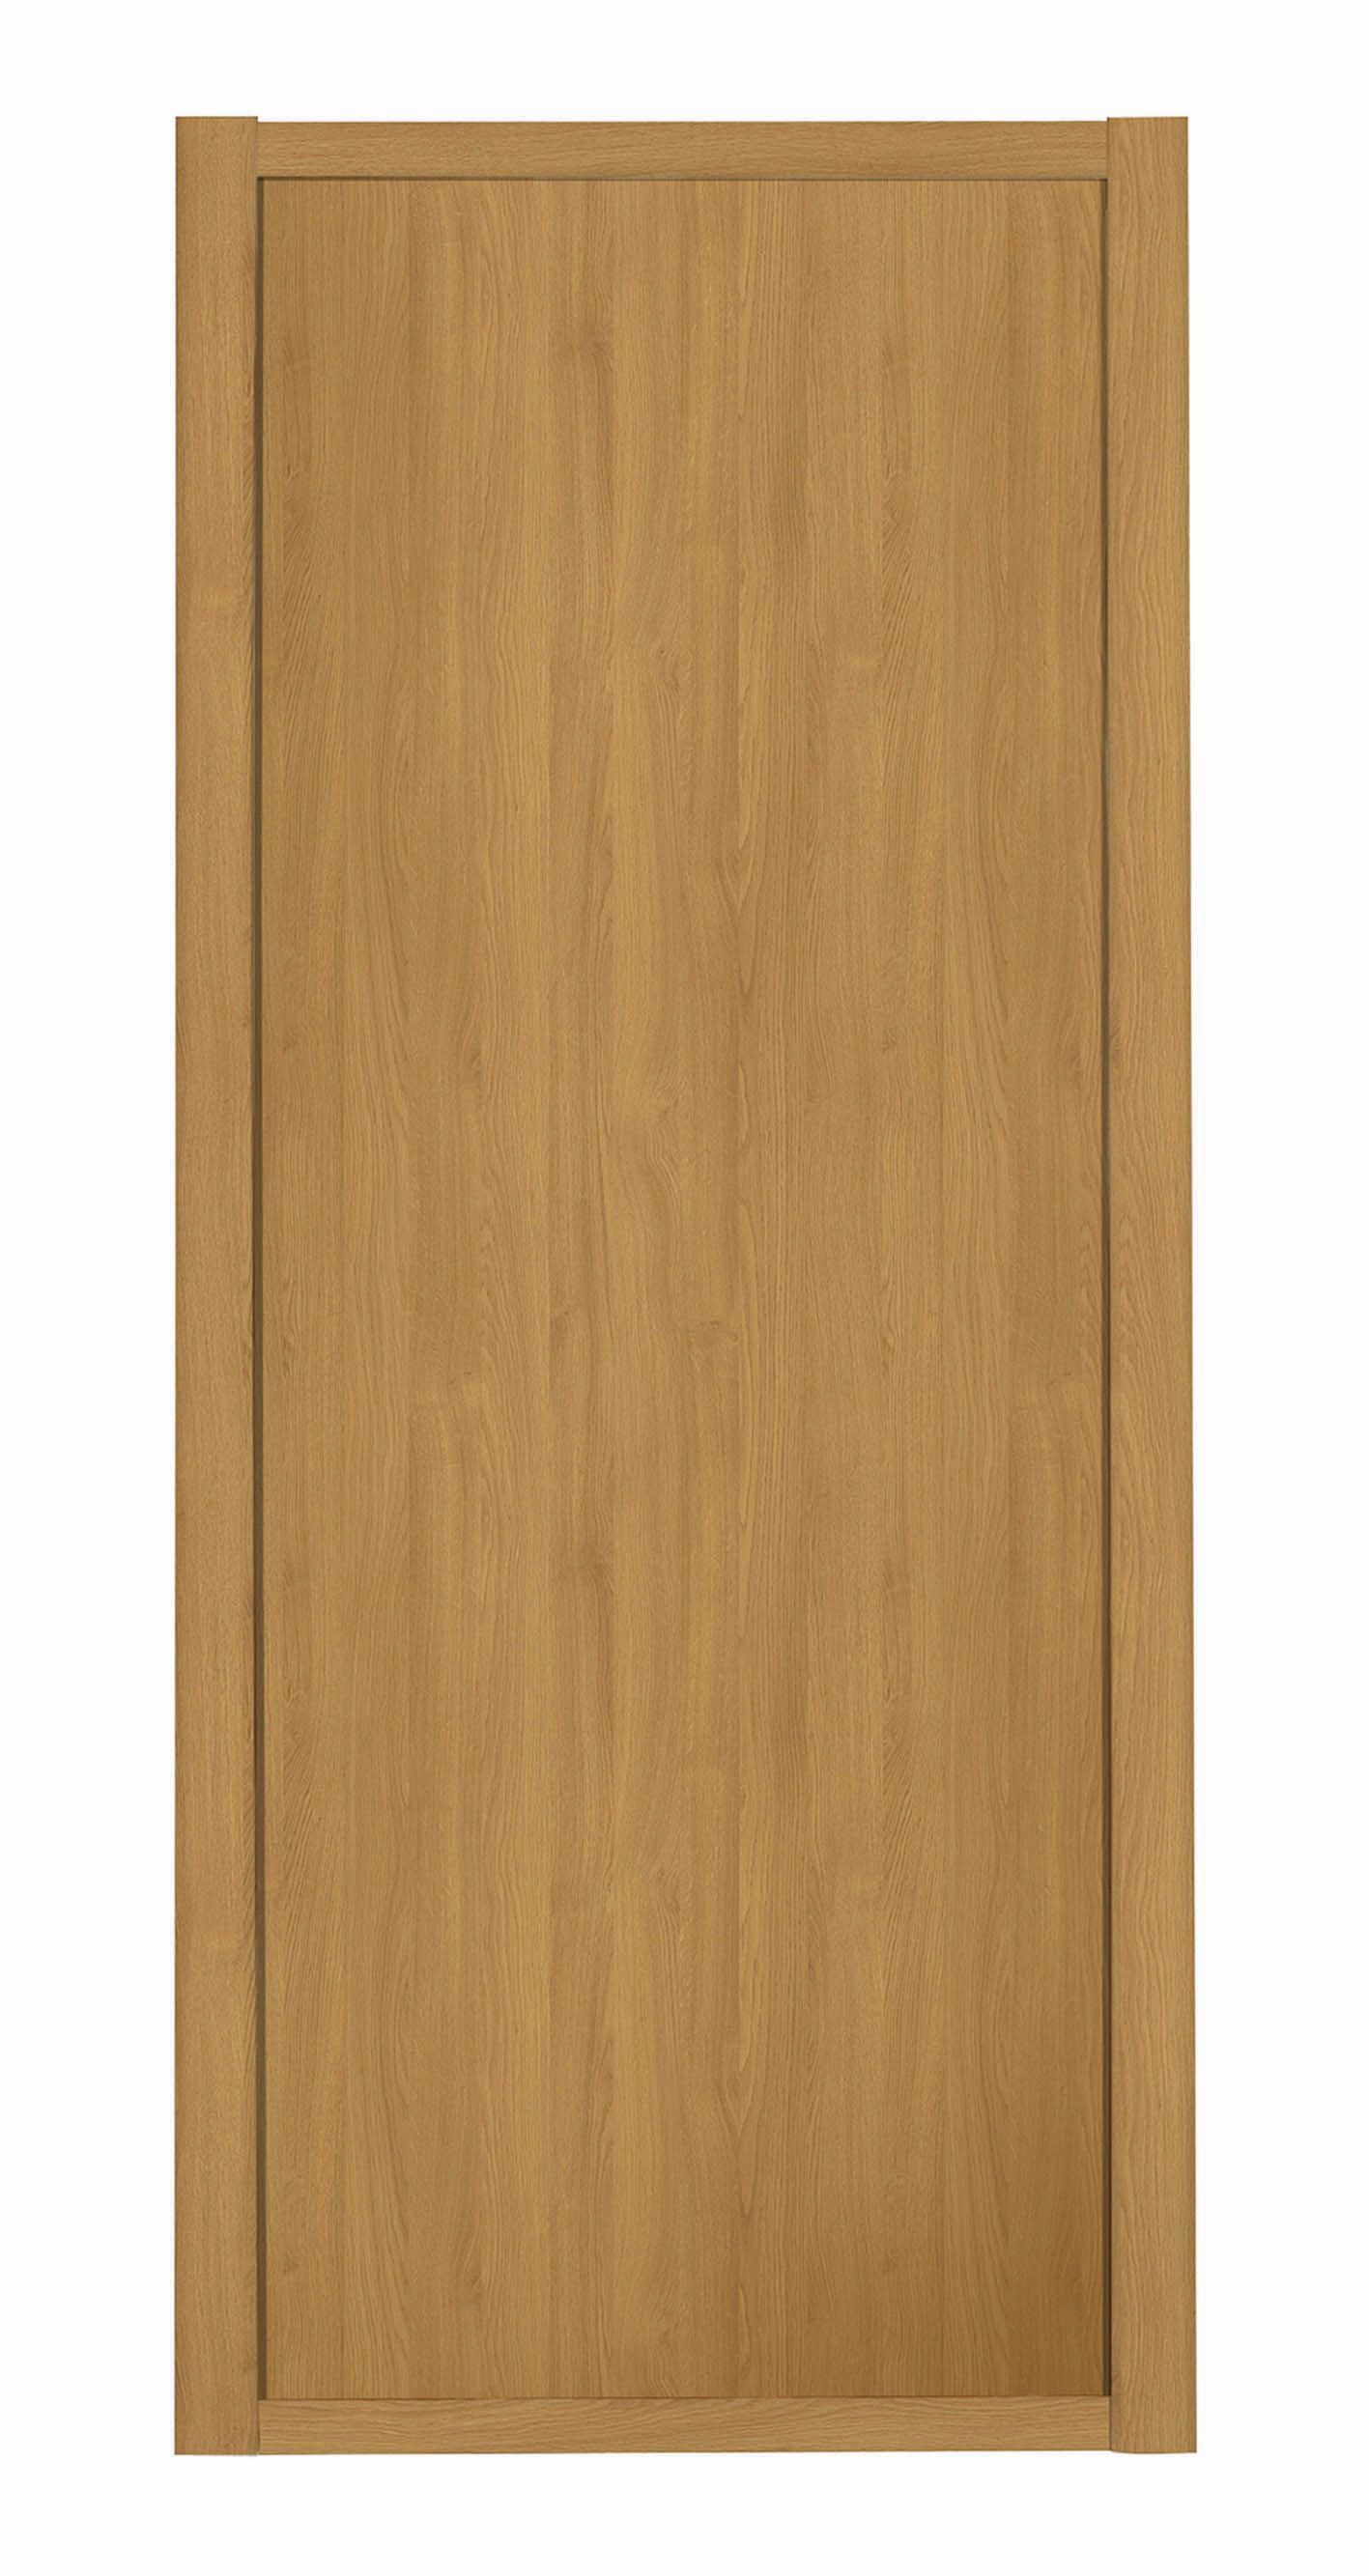 Spacepro Shaker 1 Panel Oak Frame Oak Door